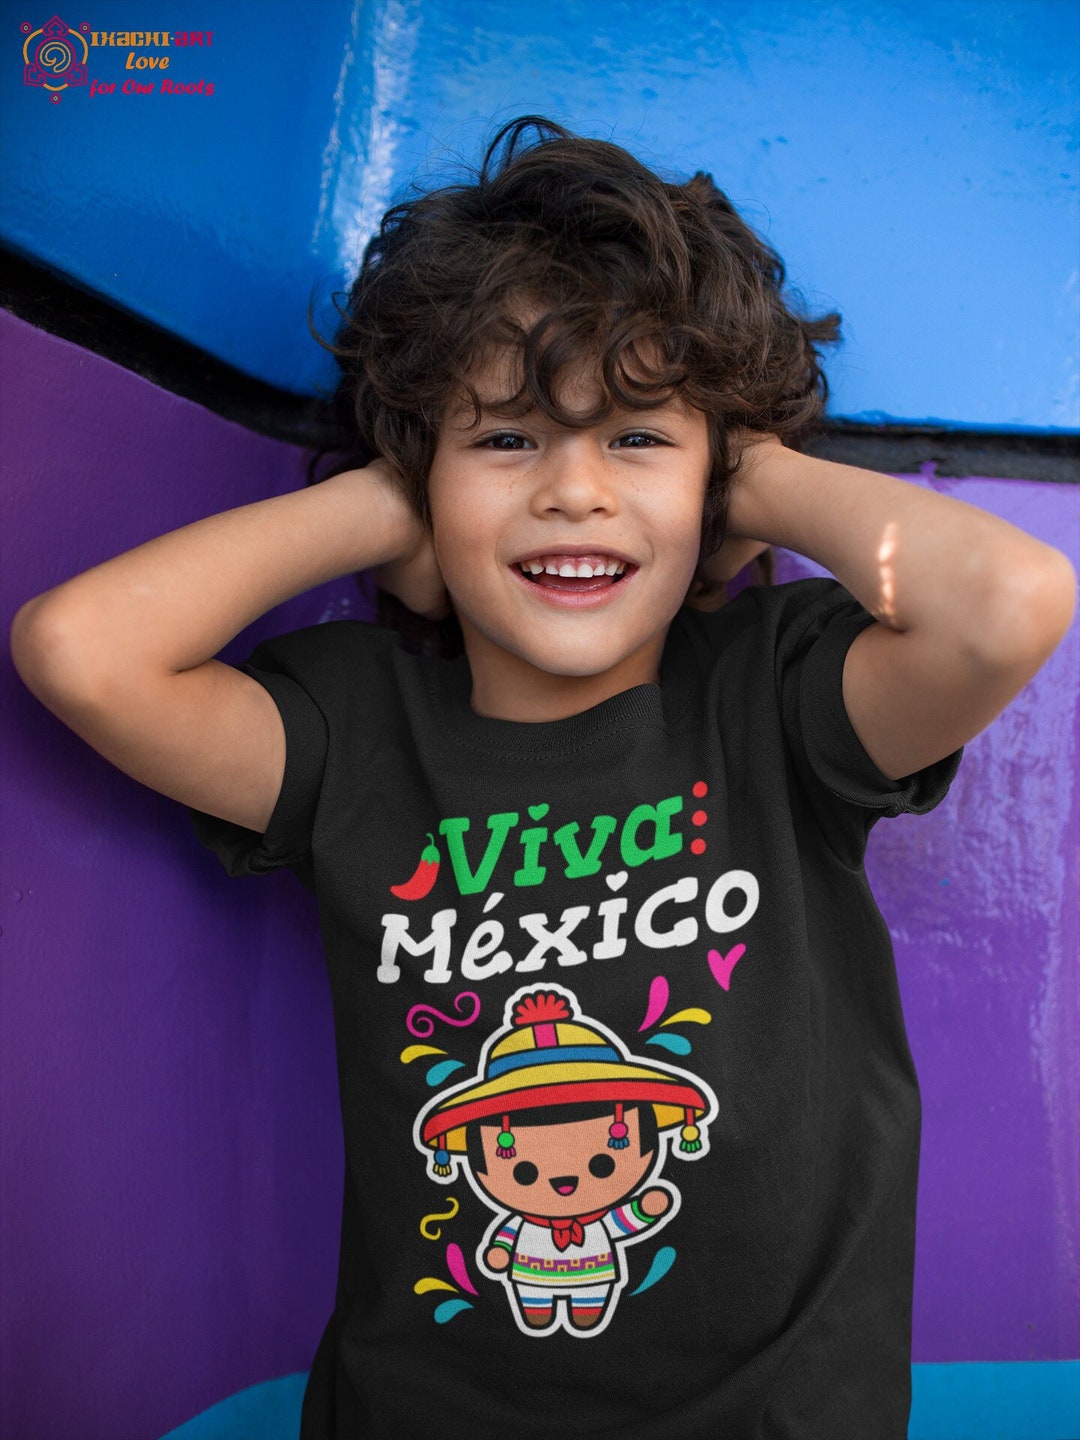 Viva Mexico | mexican fiesta shirt | funny mexican